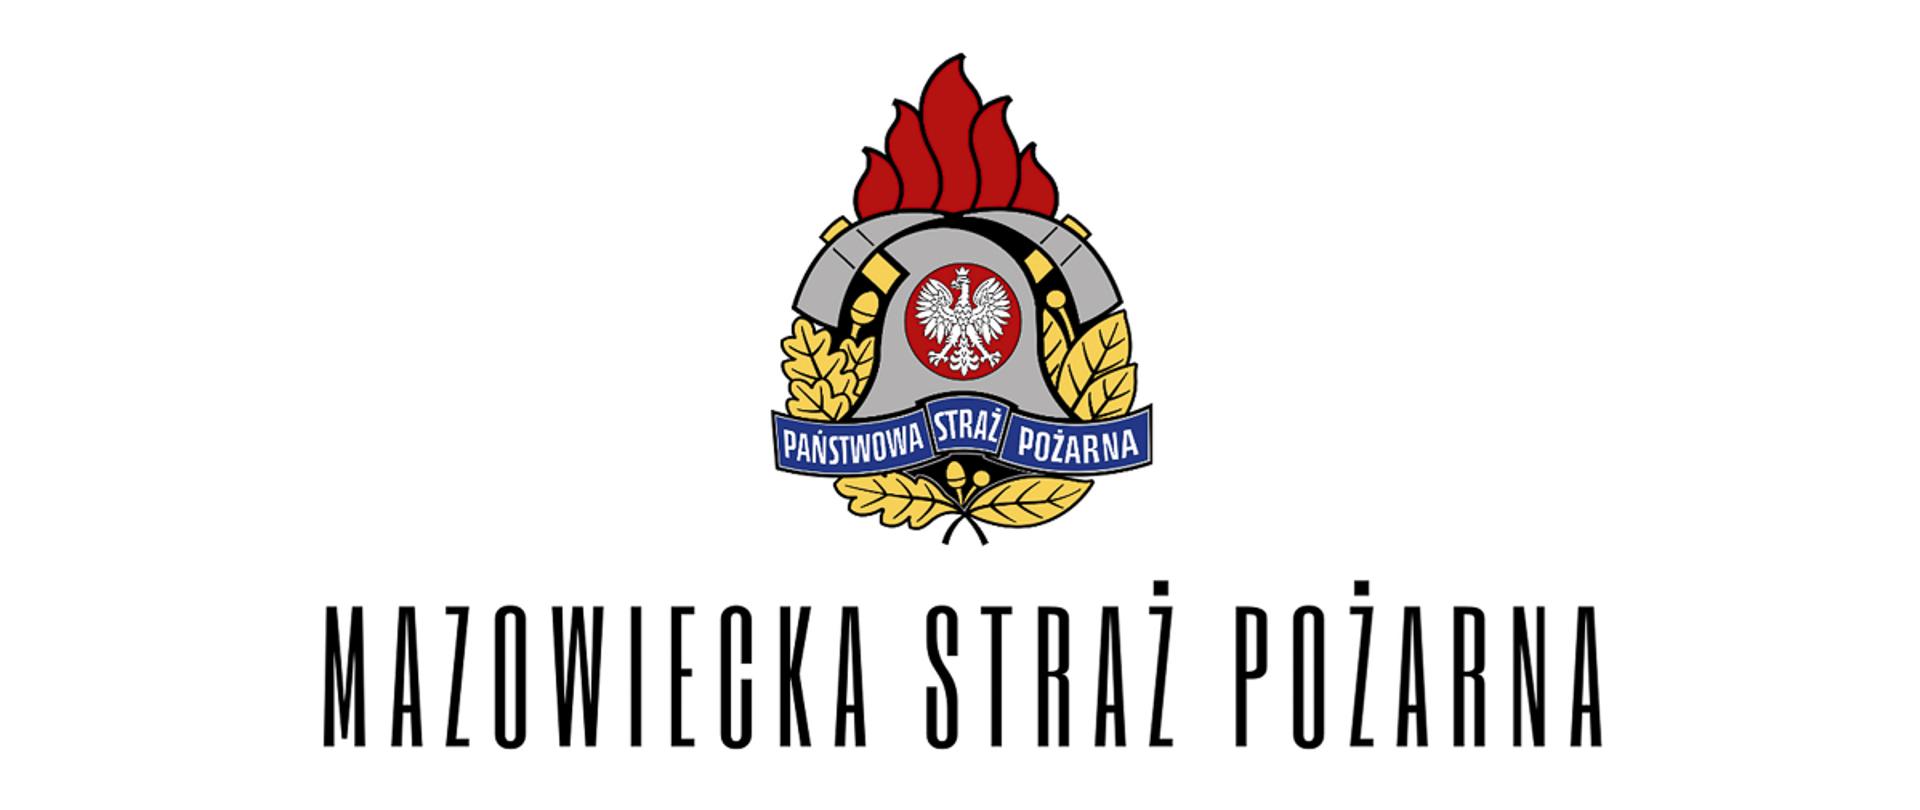 Logotyp Państwowej Straży Pożarnej na białym tle, pod spodem napis Mazowiecka Straż Pożarna w kolorze czarnym.